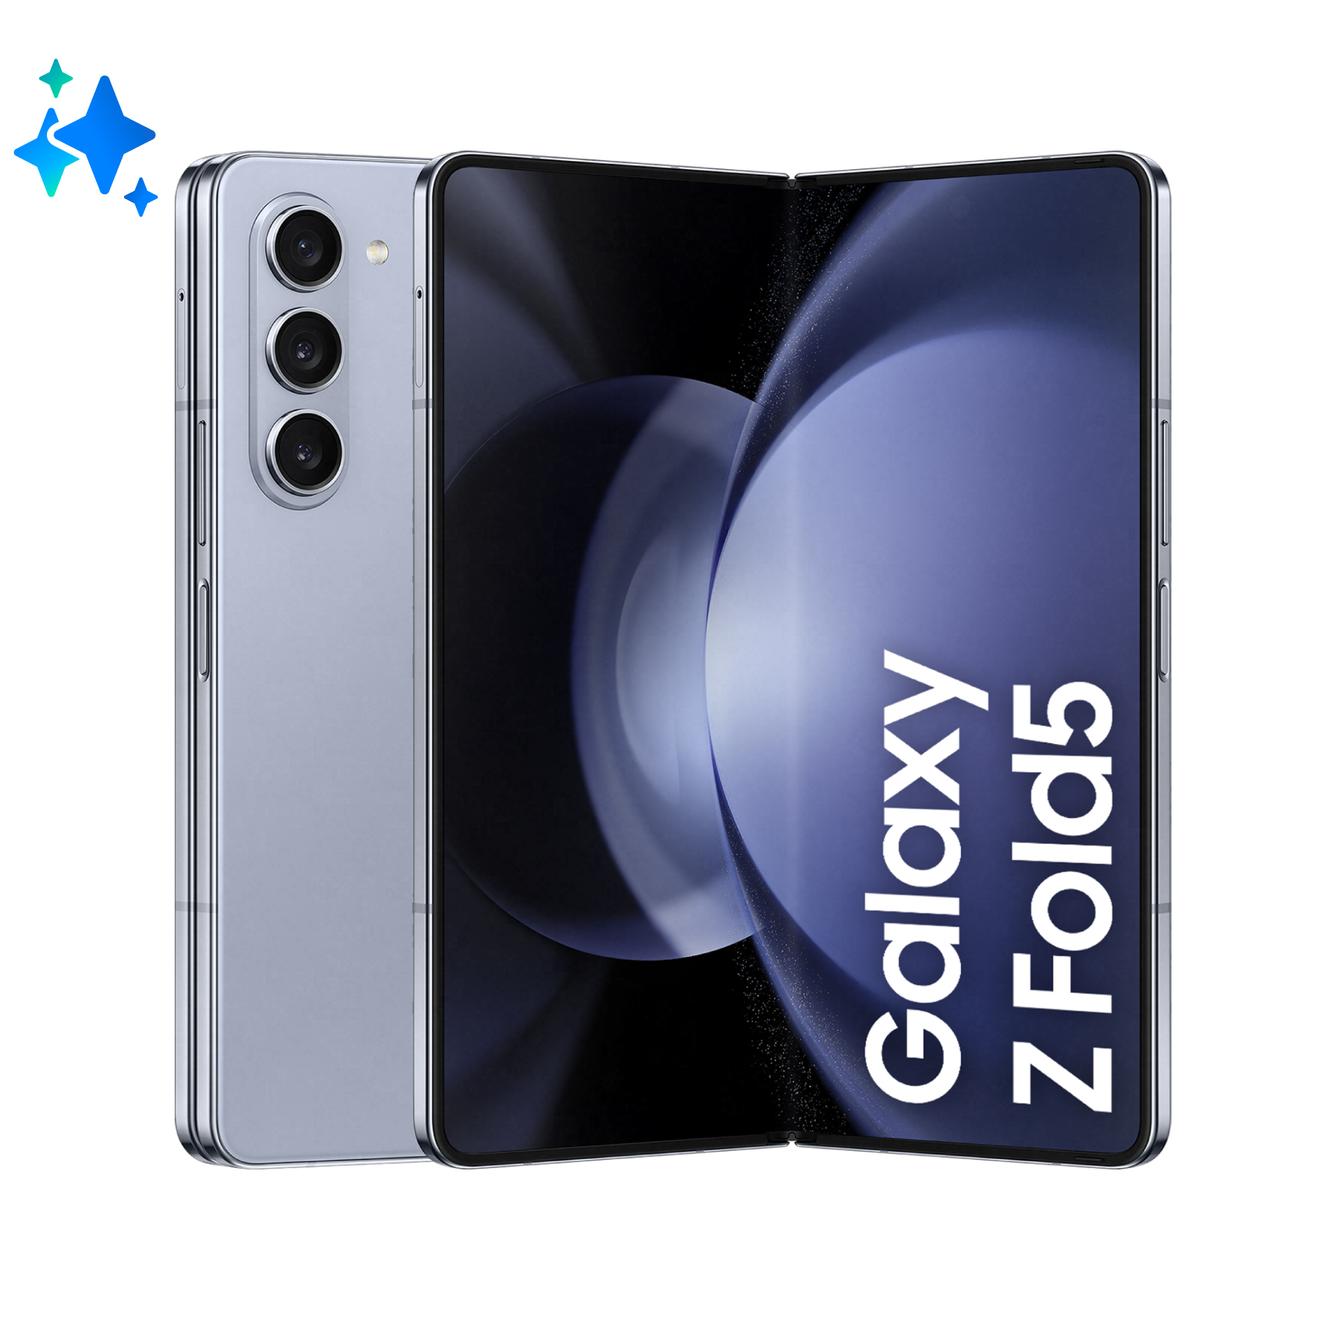 Offerta per Samsung - Galaxy Z Fold5 Smartphone AI RAM 12GB Display 6,2"/7,6" Dynamic AMOLED 2X Icy Blue 256GB a 1799€ in Comet